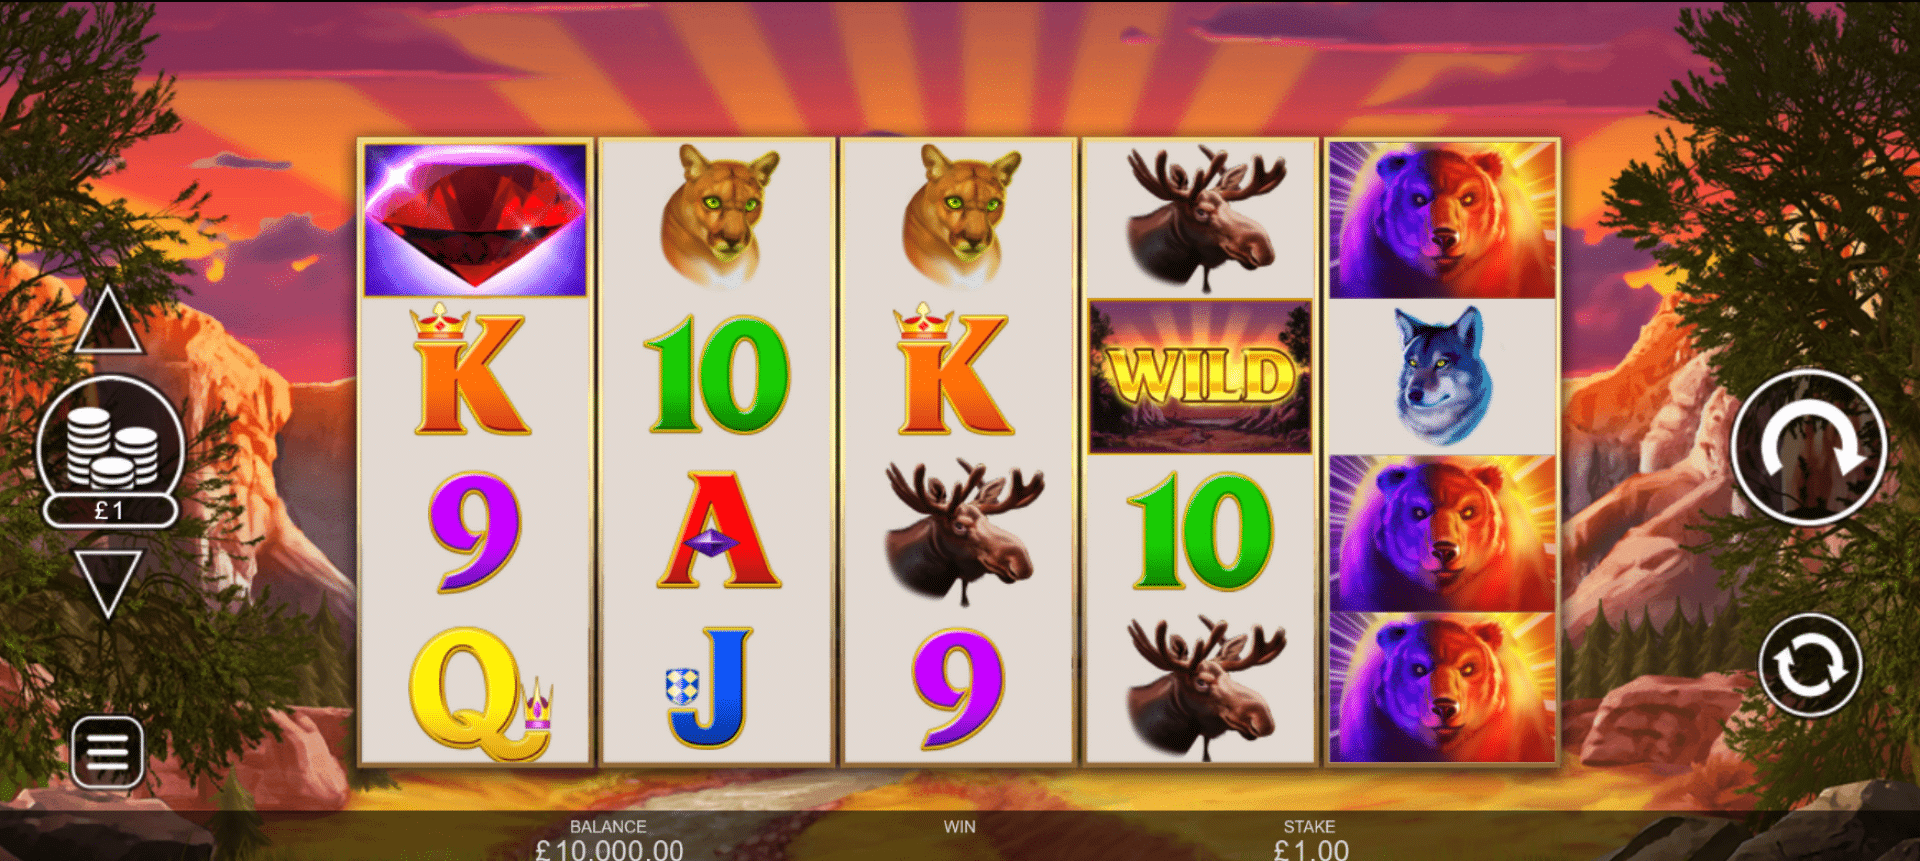 schermata della slot machine grizzly